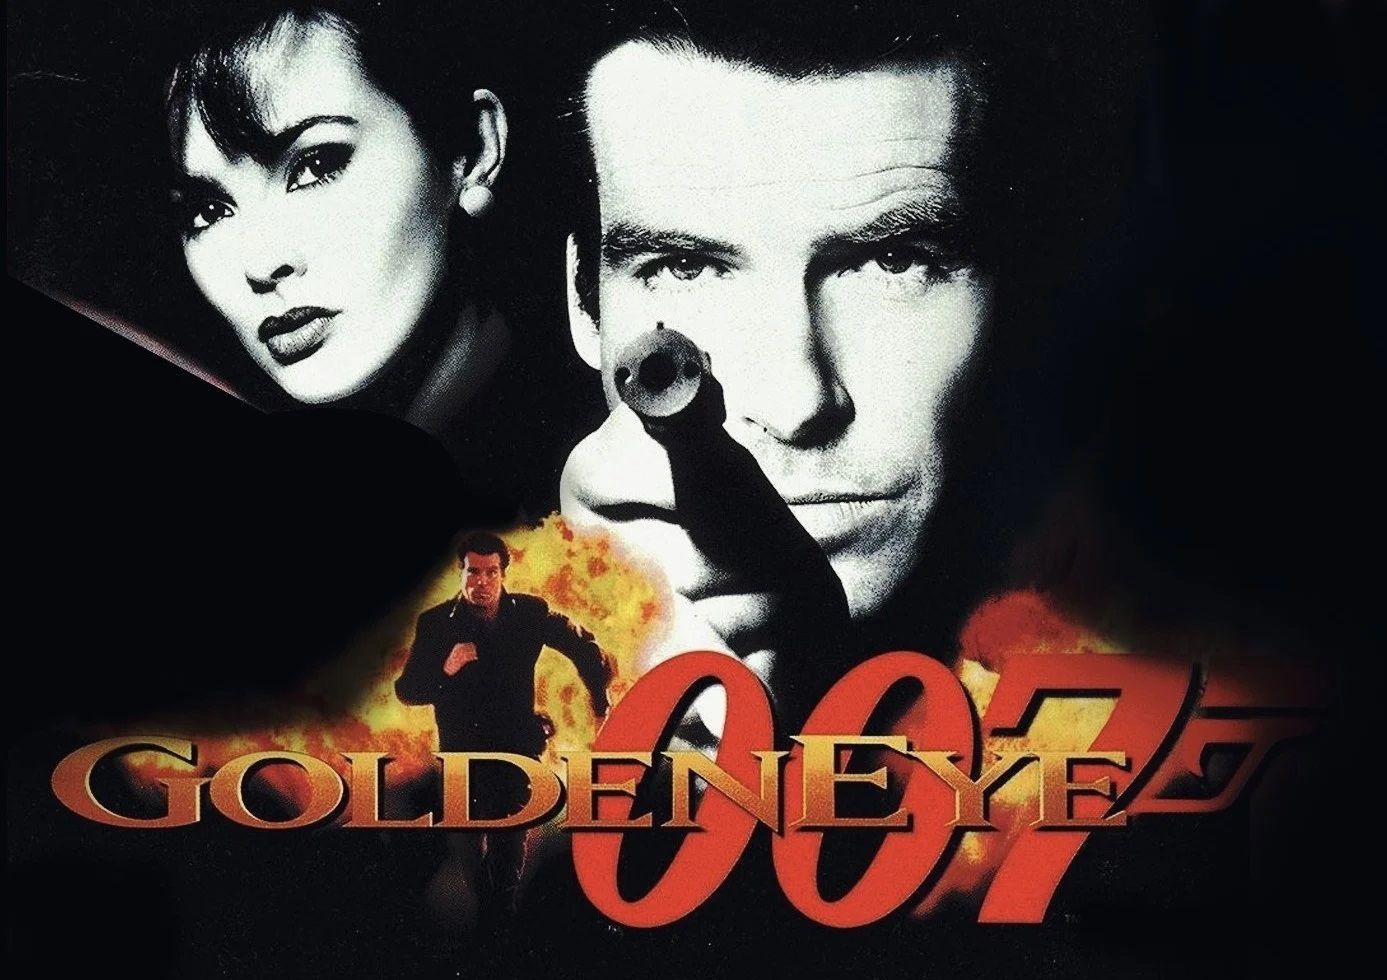 Un joueur reproduit GoldenEye 007 avec le mode Arcade de Far Cry 5